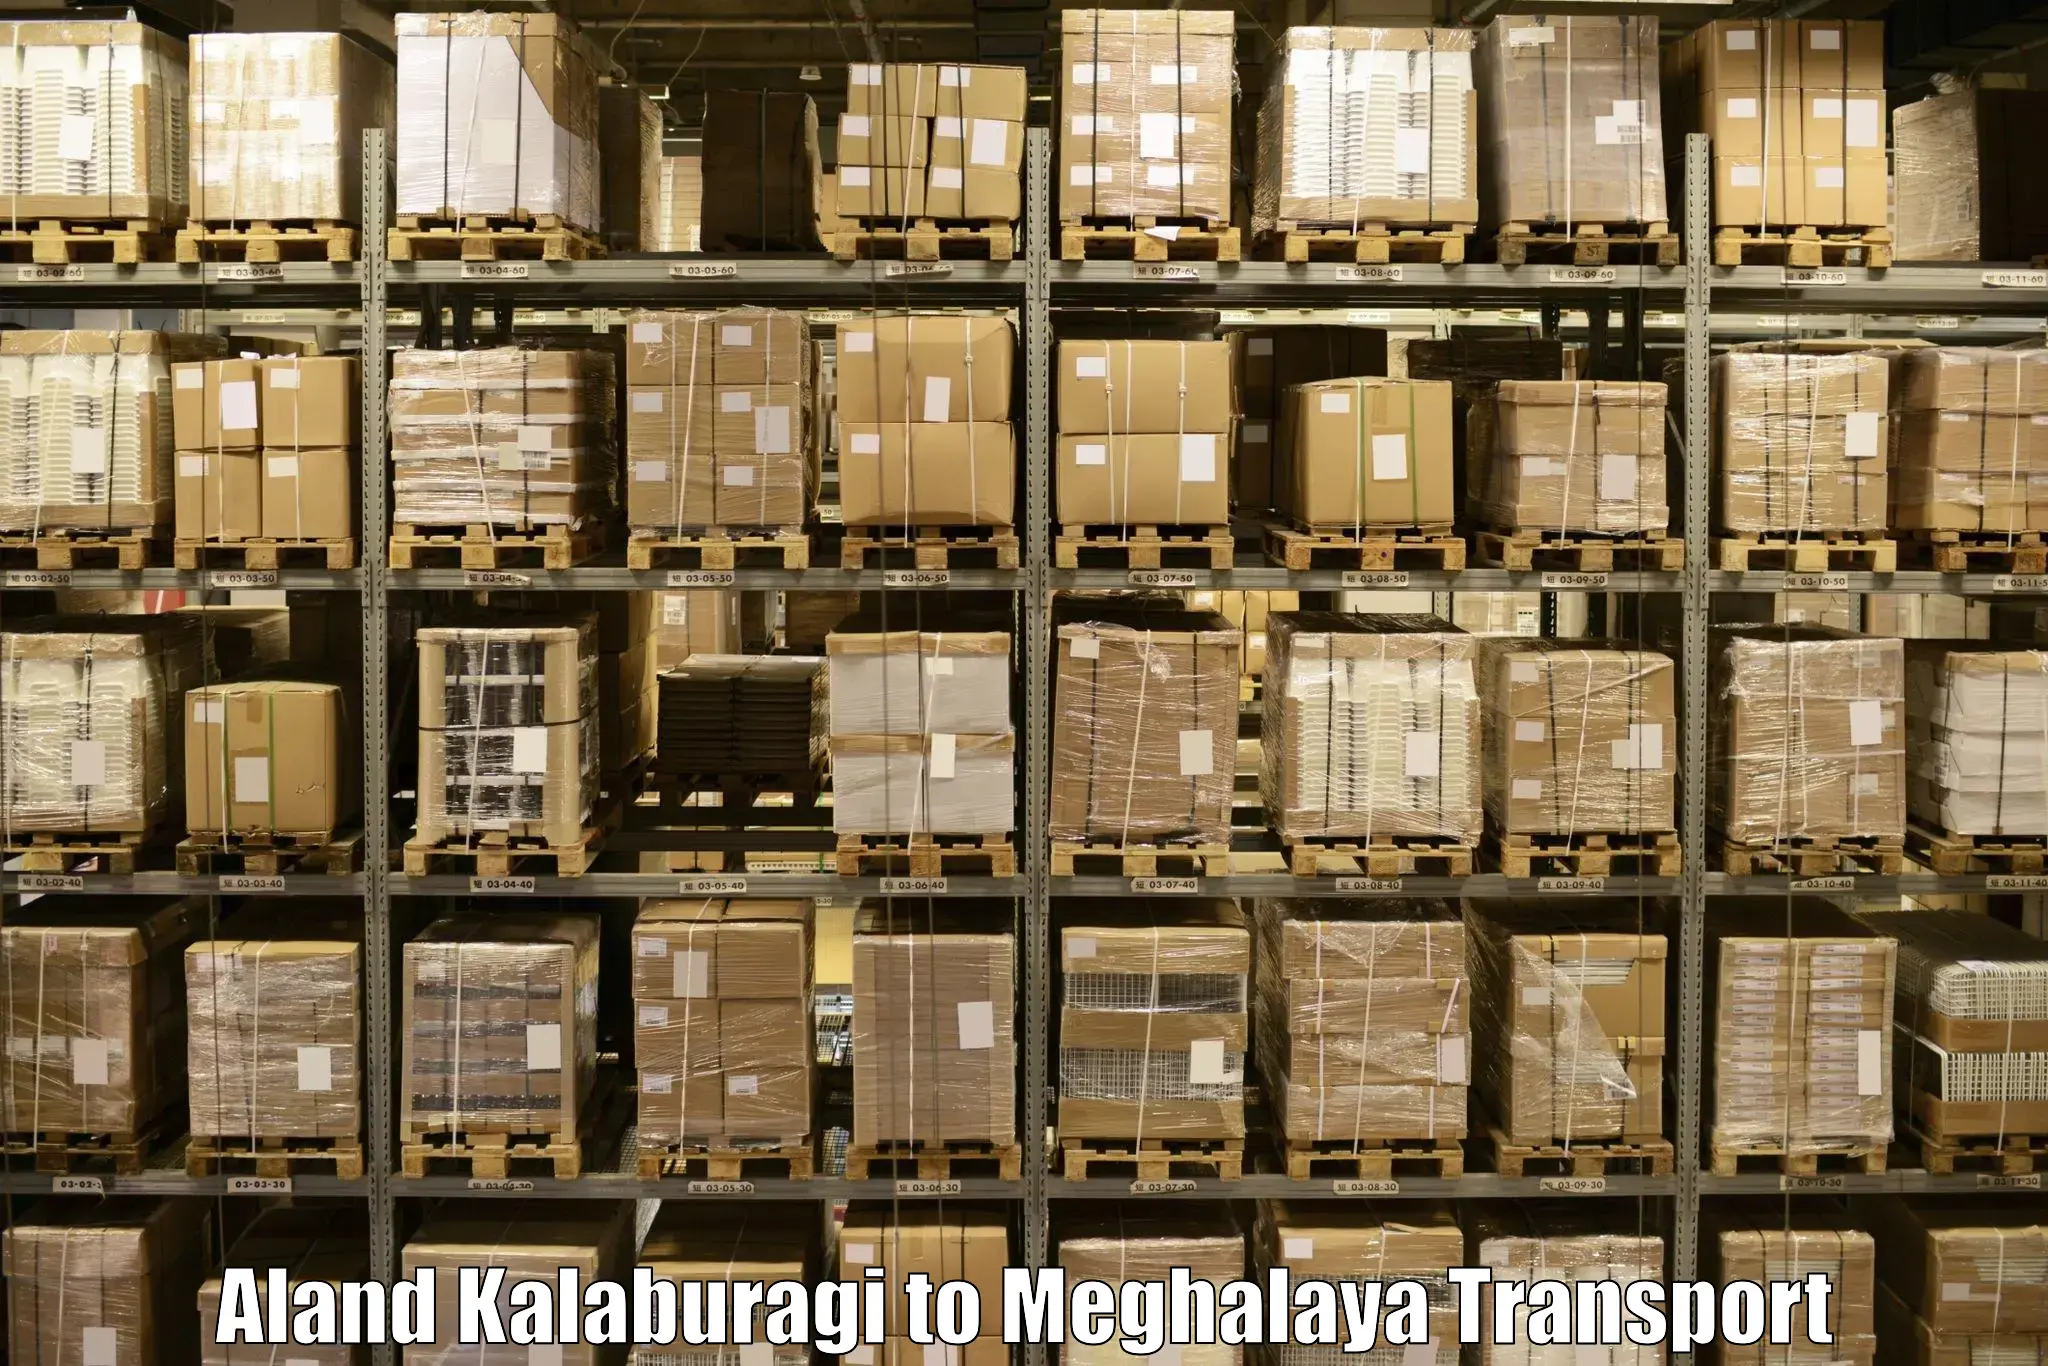 Daily transport service Aland Kalaburagi to Meghalaya